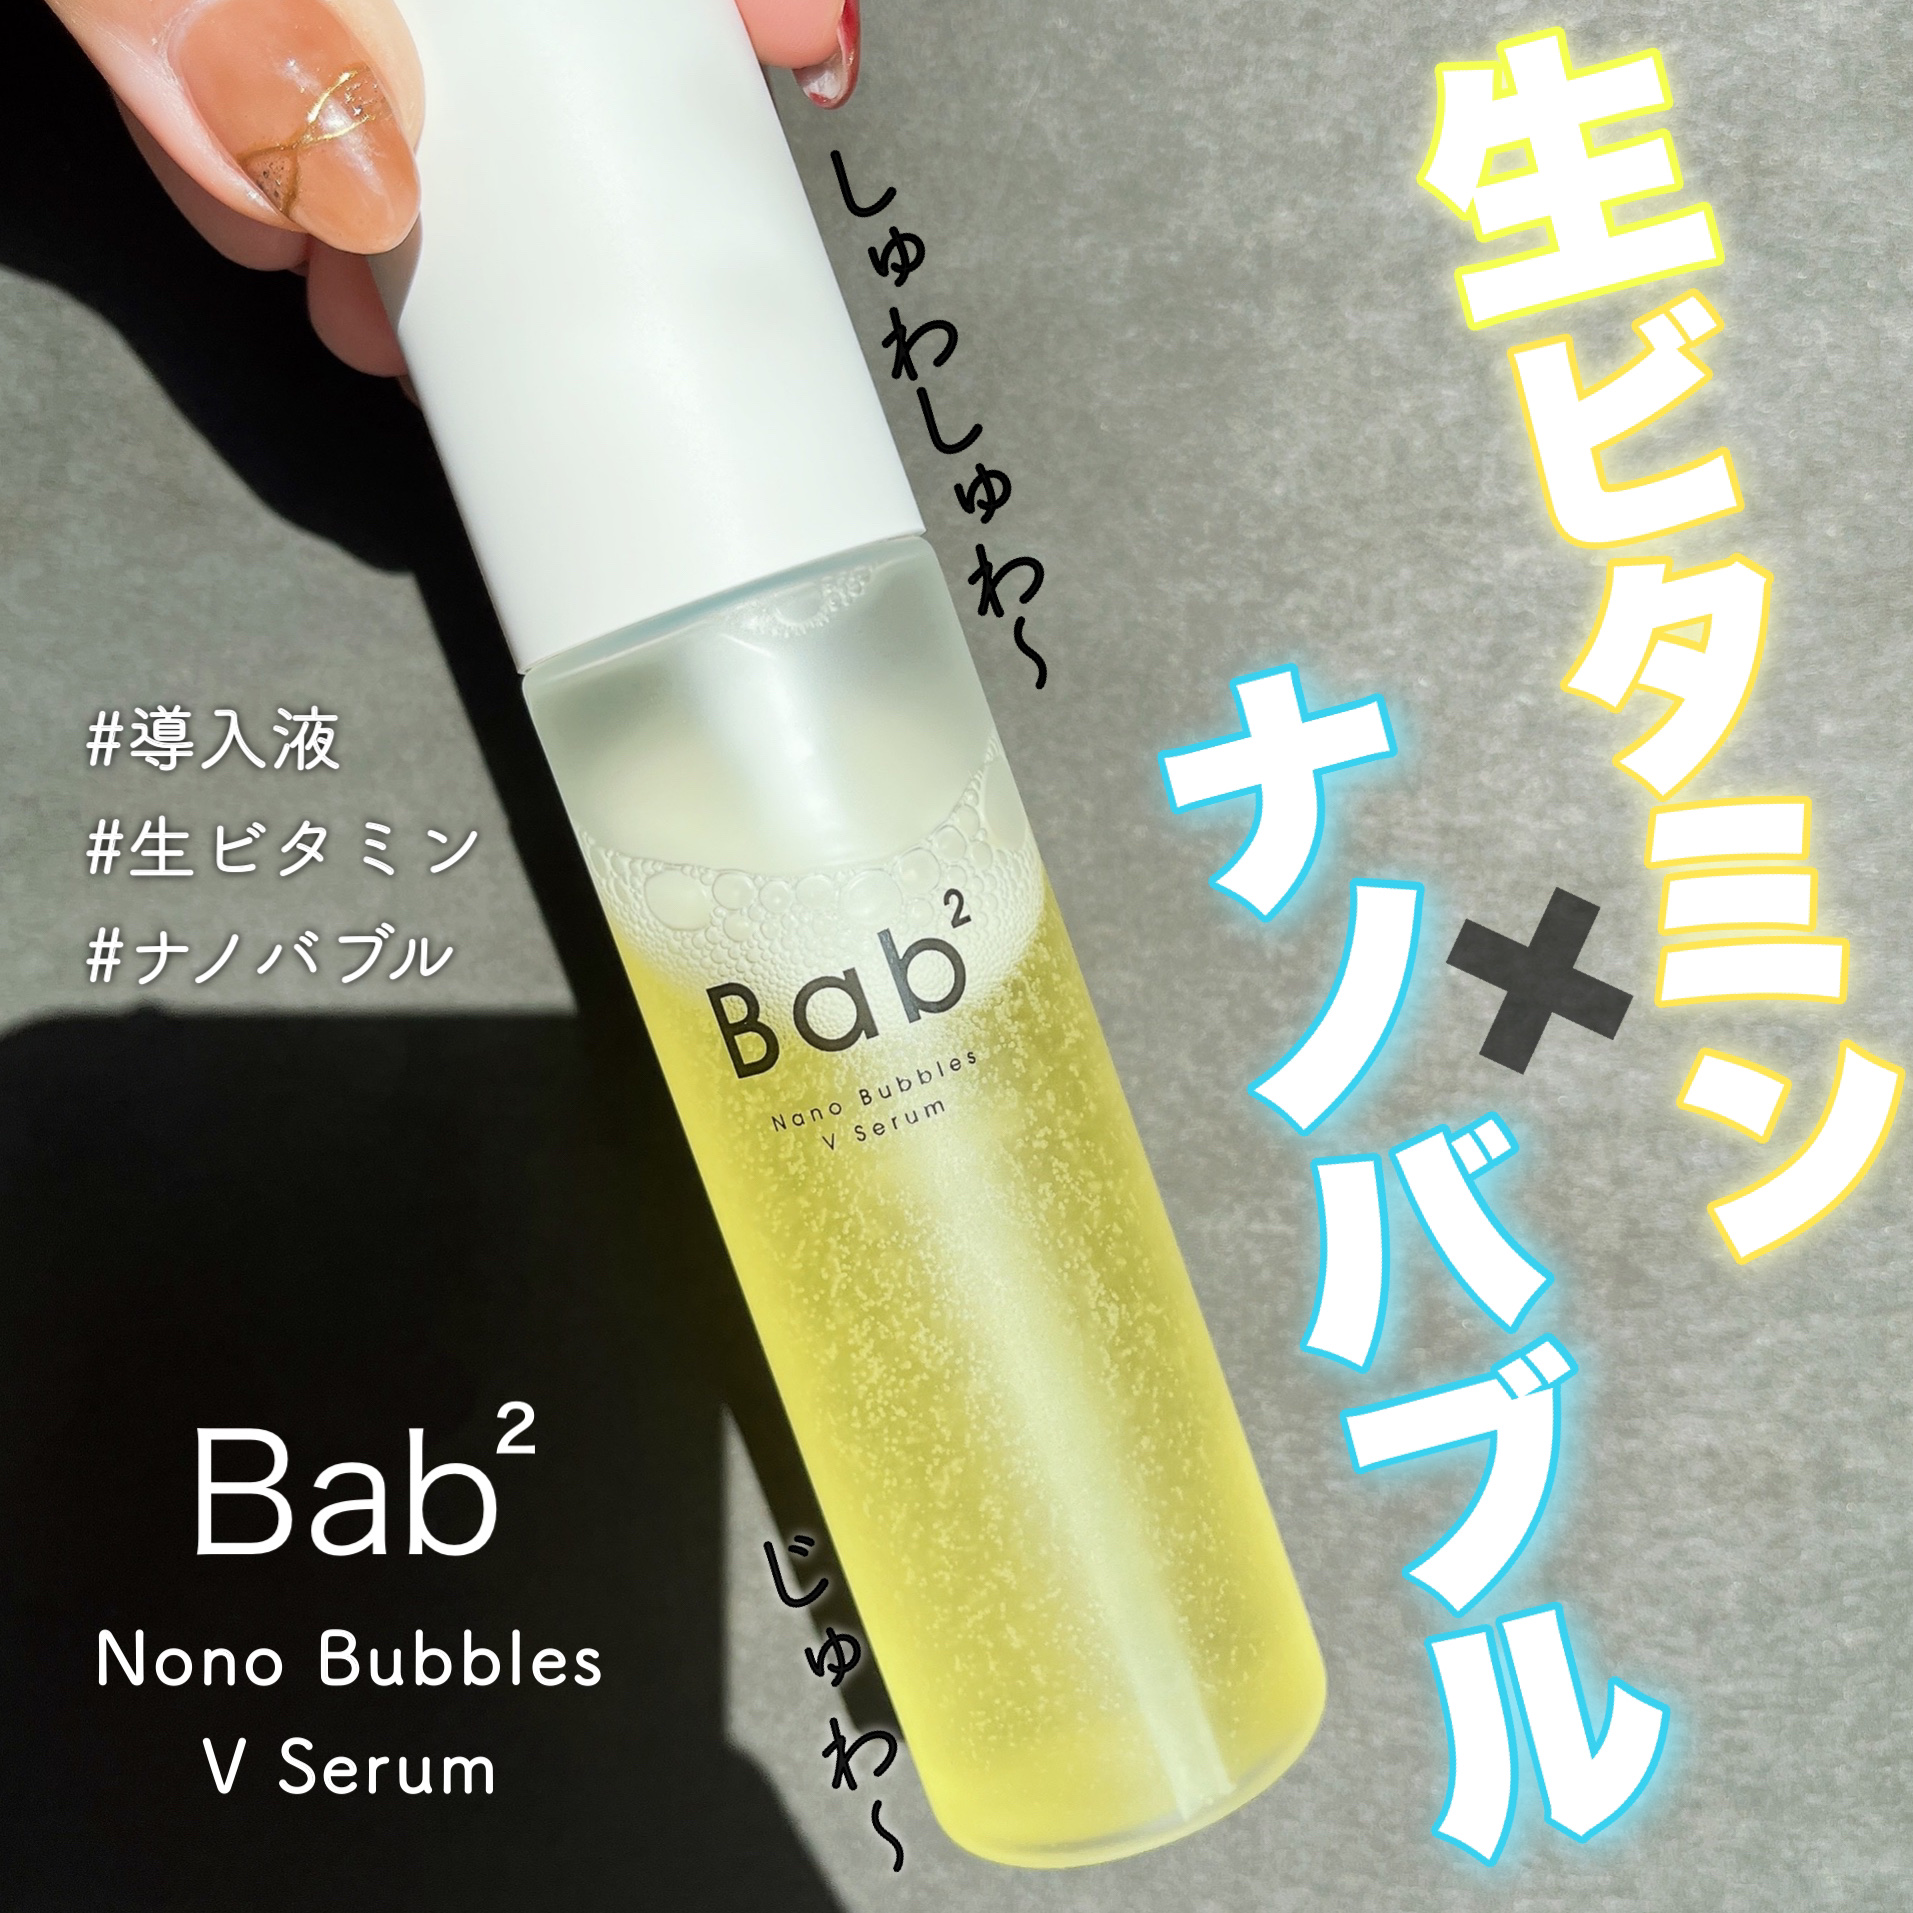 Bab² バブバブ ナノバブルVセラム - 基礎化粧品